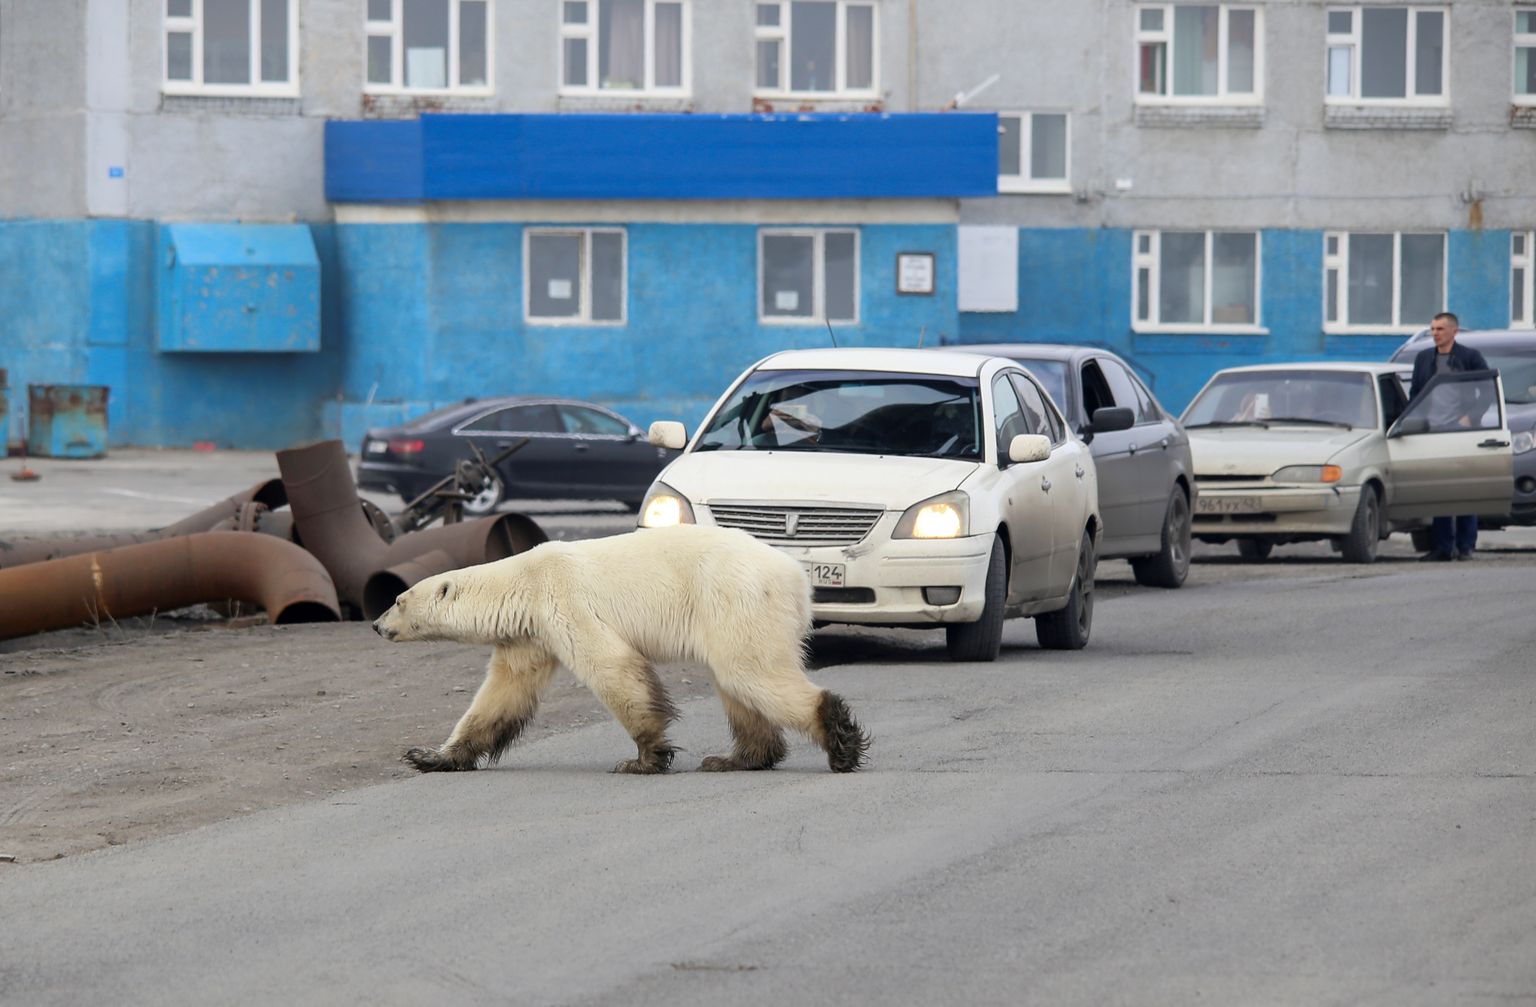 Jääkaru oli sadade kilomeetrite kaugusel oma looduslikust elupaigast.